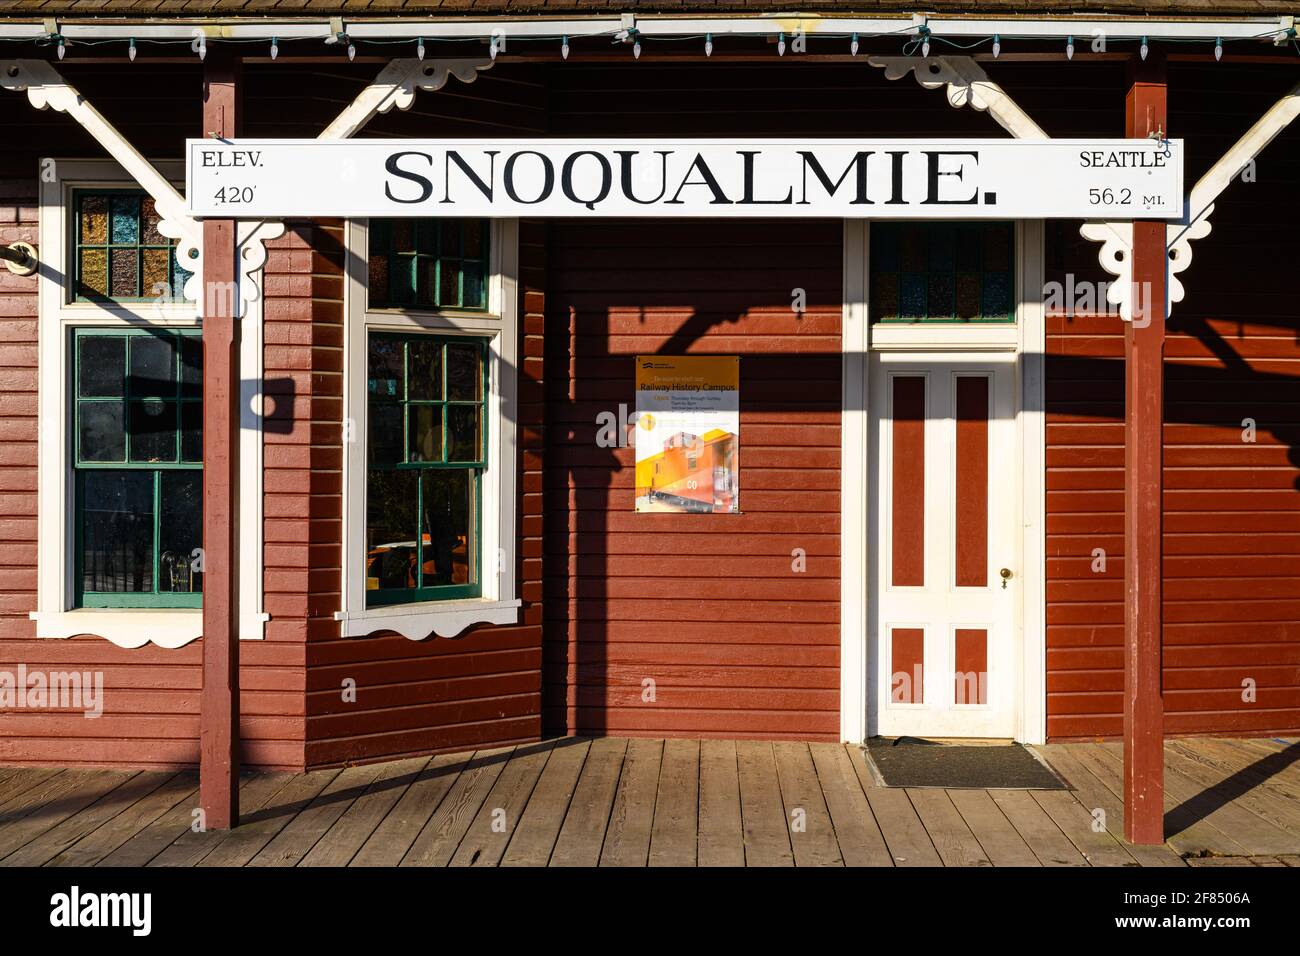 Snoqualmie, WA, USA - 11 aprile 2021; storico cartello ferroviario alla stazione ferroviaria di Snoqualmie Washington che indica 56,2 miglia di percorso per Seattle Foto Stock